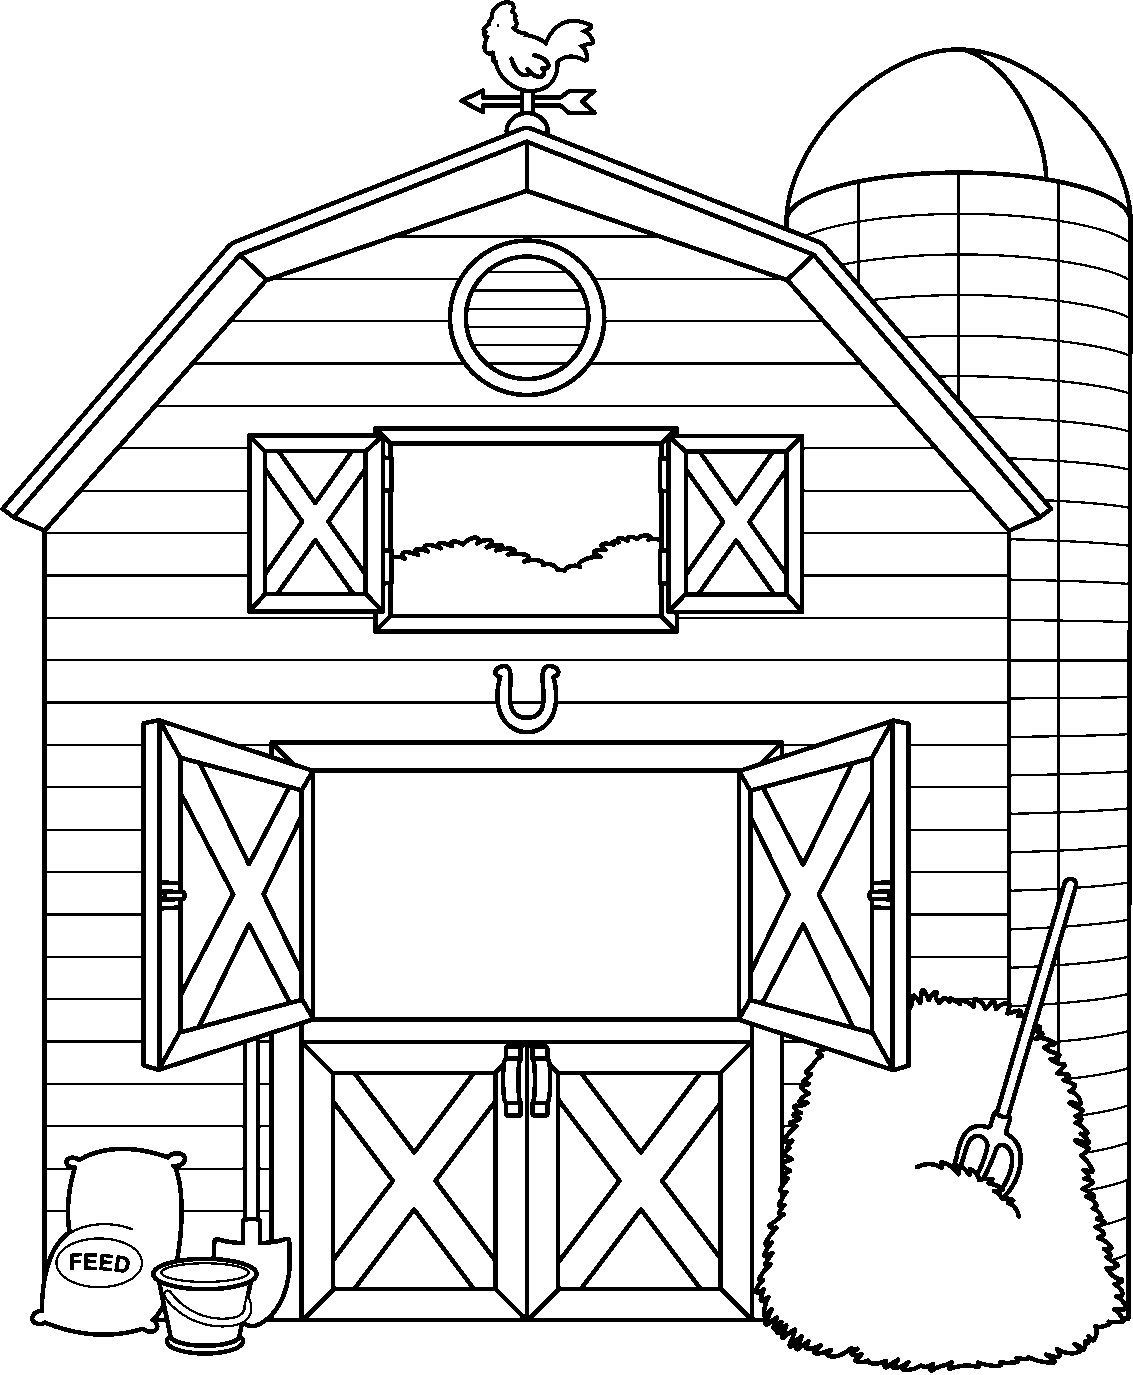 Barn outline clipart 